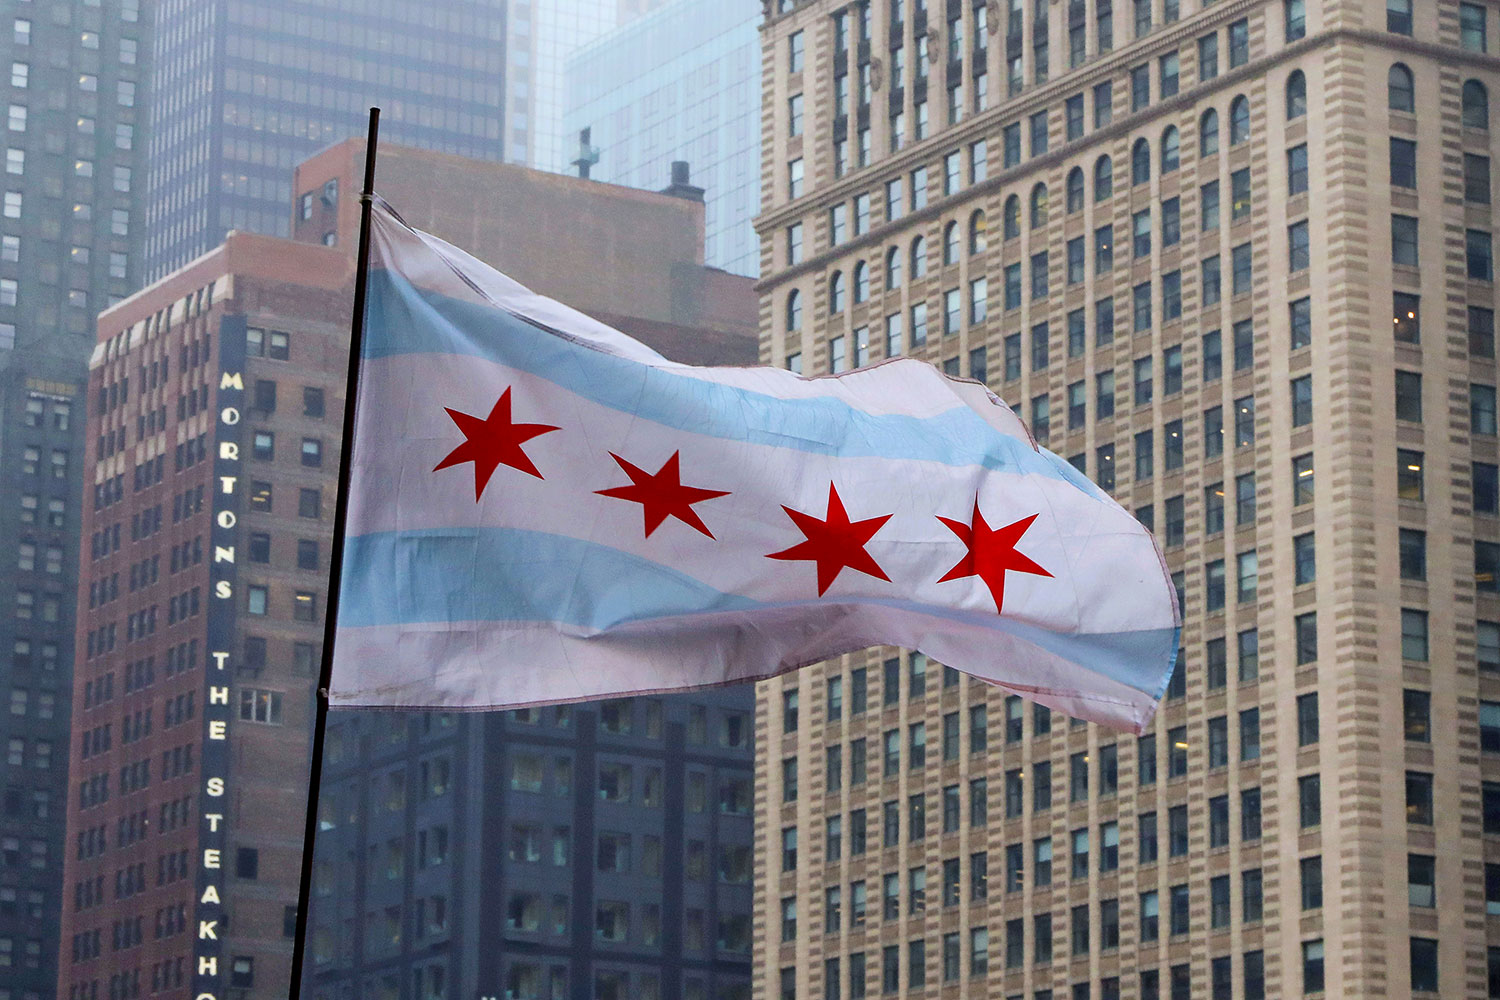 The Chicago flag